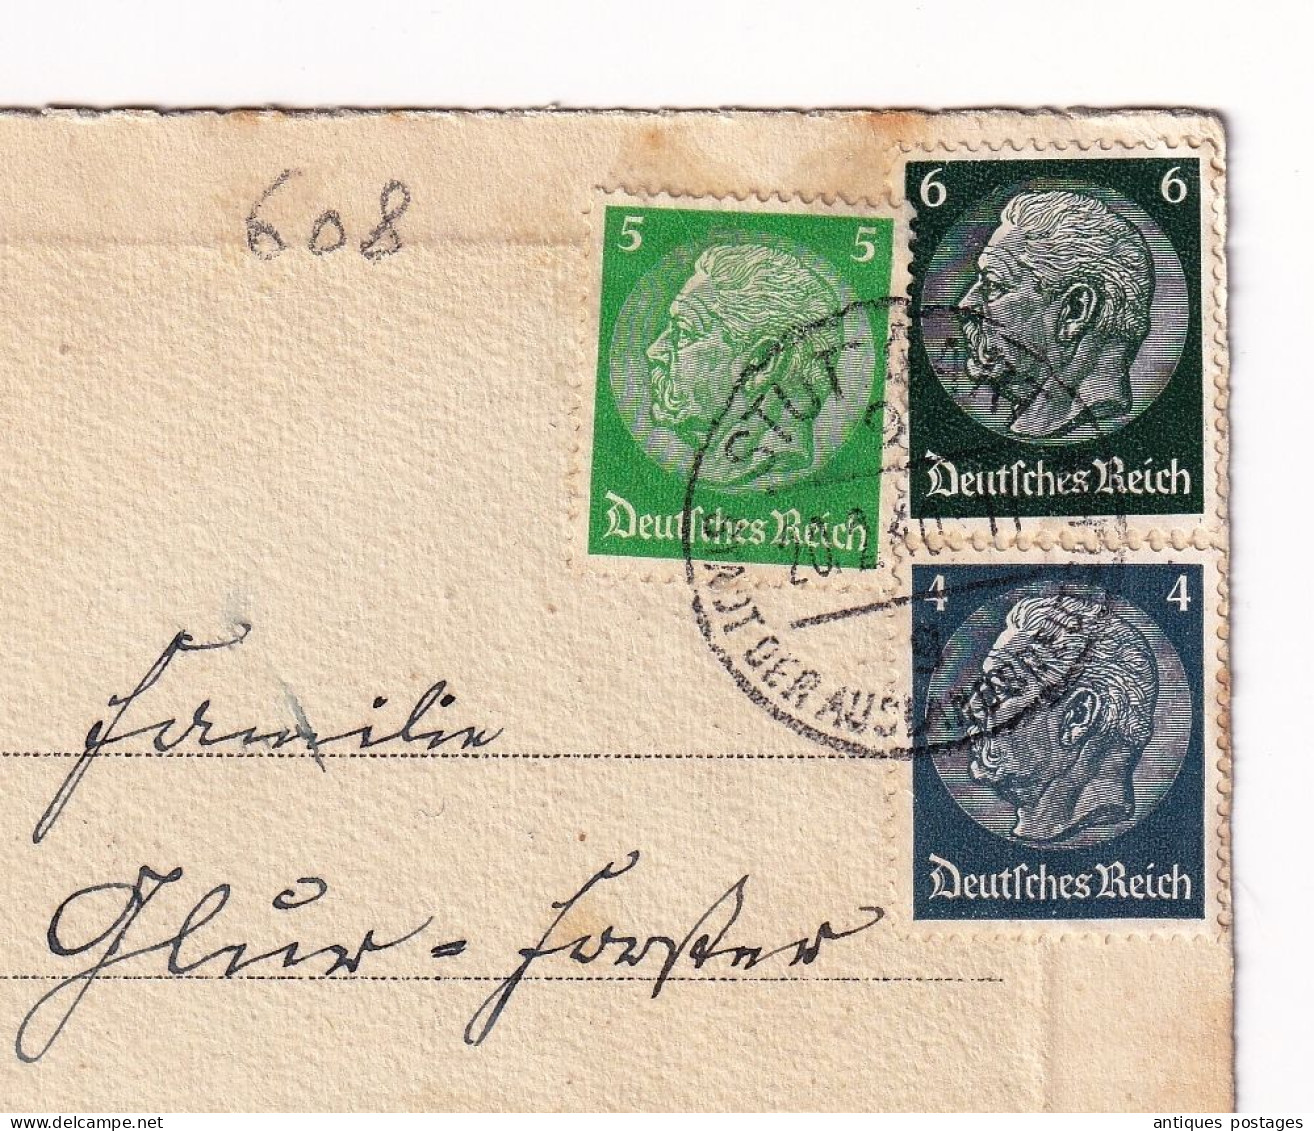 Postkart Stuttgart 1940 Deutschland Original Radierung Handabzug Allemagne Stamp Paul Von Hindenburg - Covers & Documents